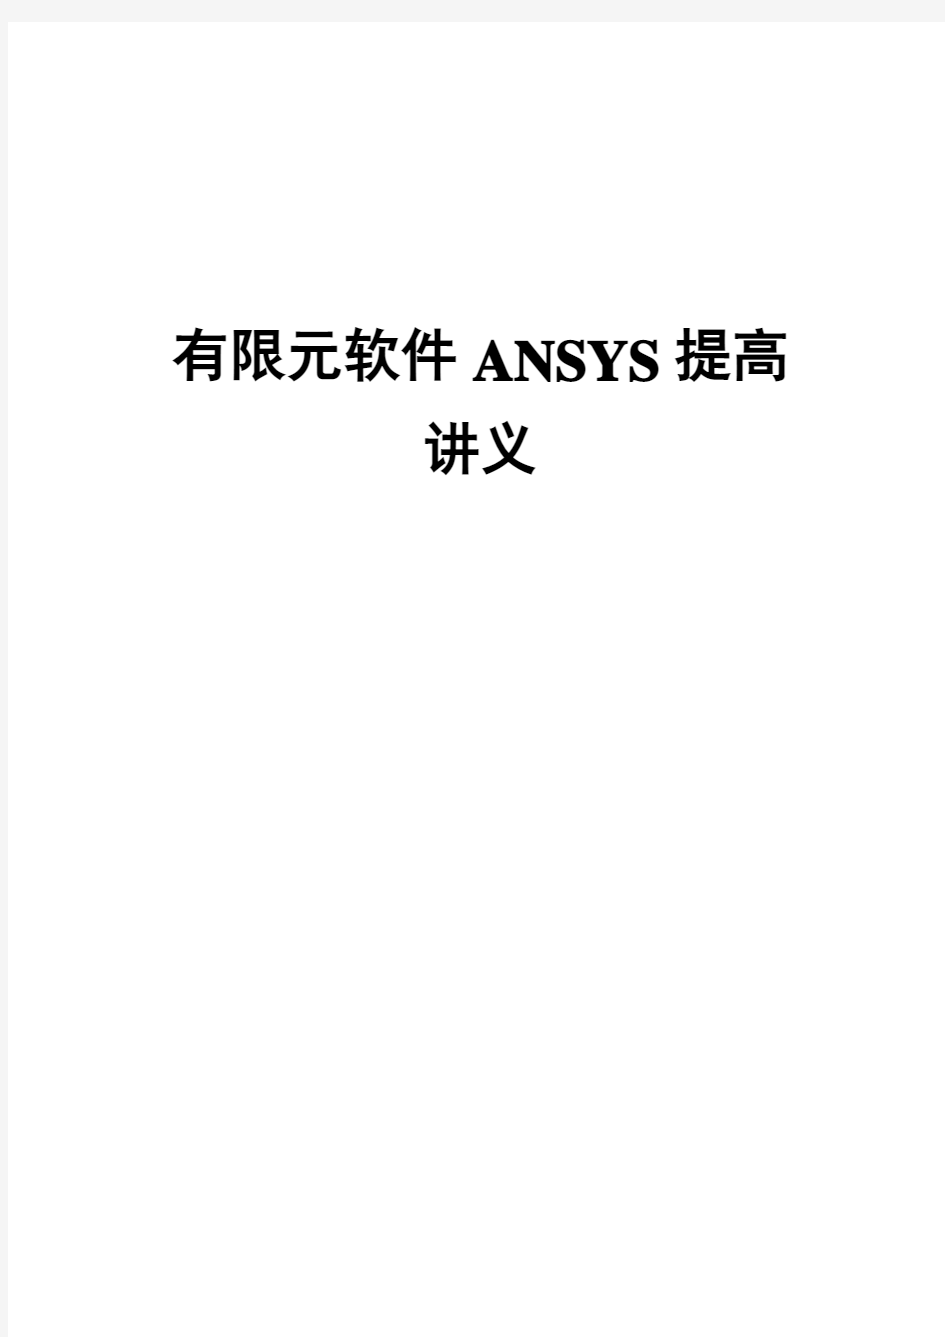 第1篇-《ANSYS应用—基础篇》